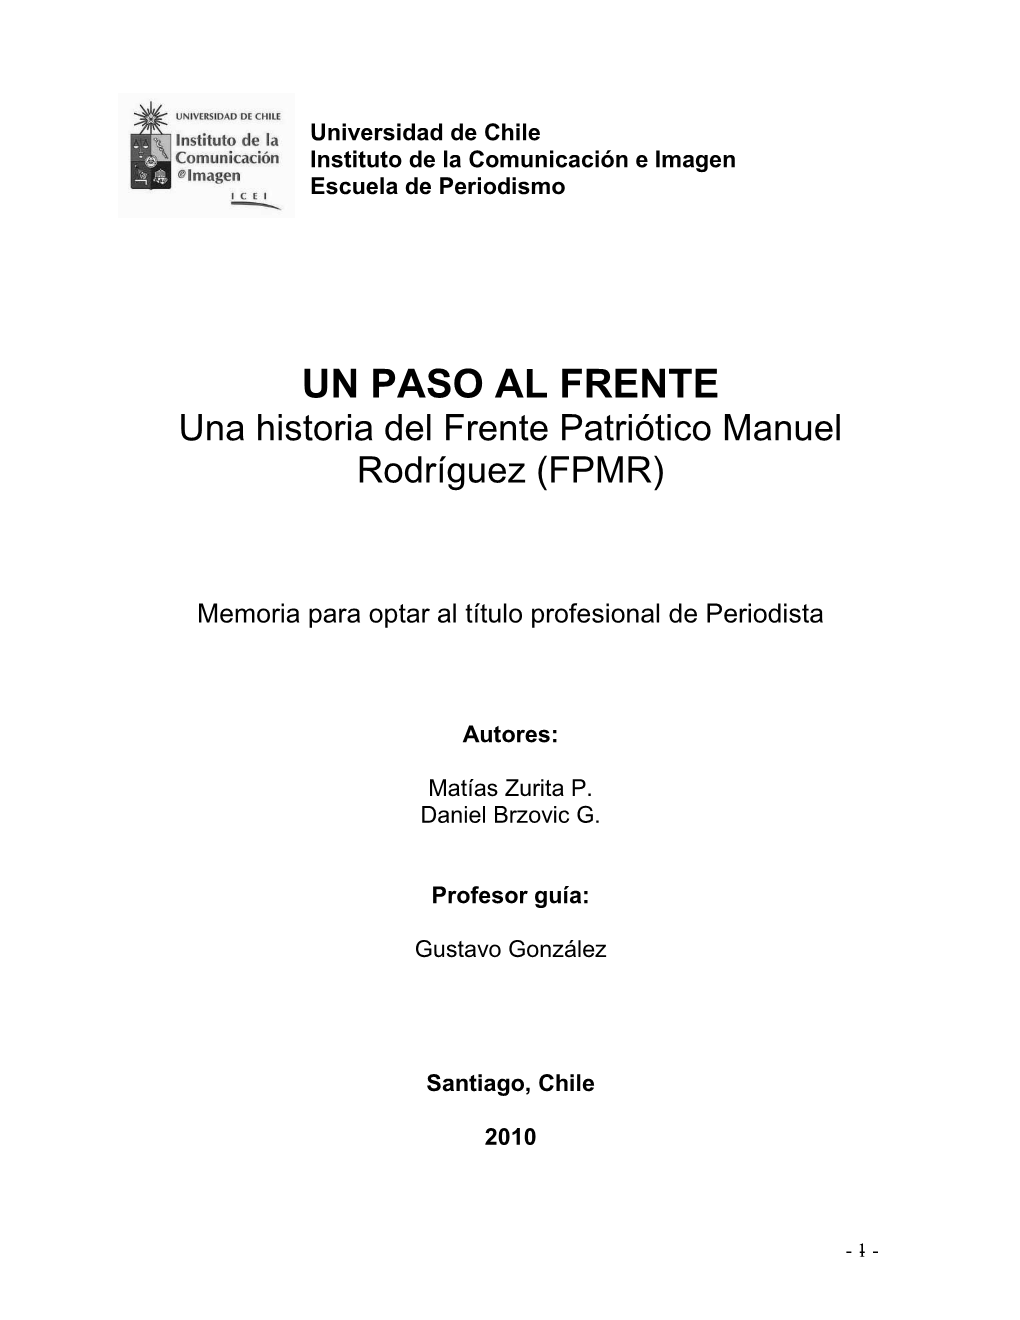 UN PASO AL FRENTE Una Historia Del Frente Patriótico Manuel Rodríguez (FPMR)